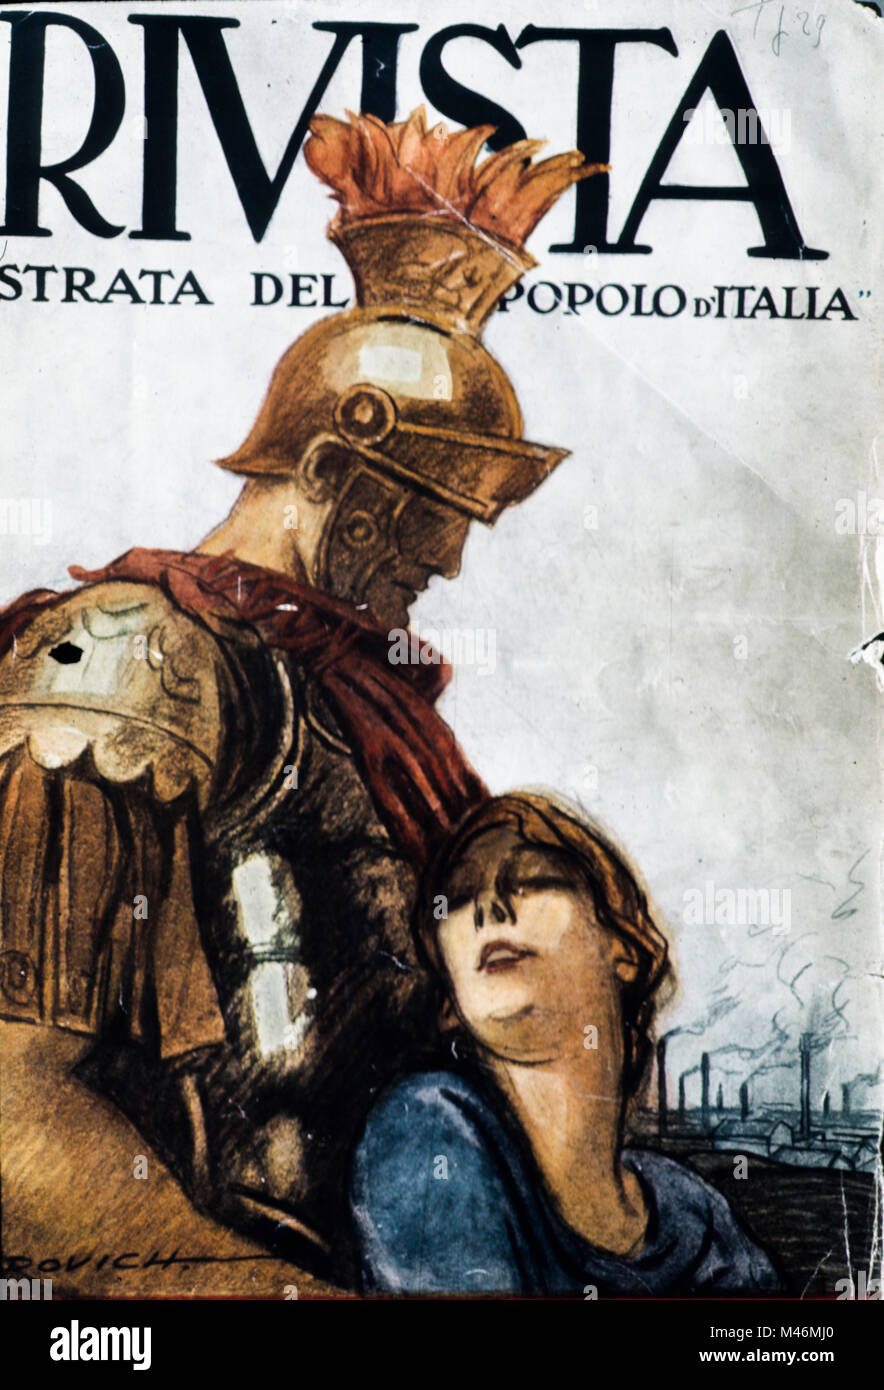 Illustrata la Rivista del popolo d'italia, Marcello dudovich, 1923 Banque D'Images